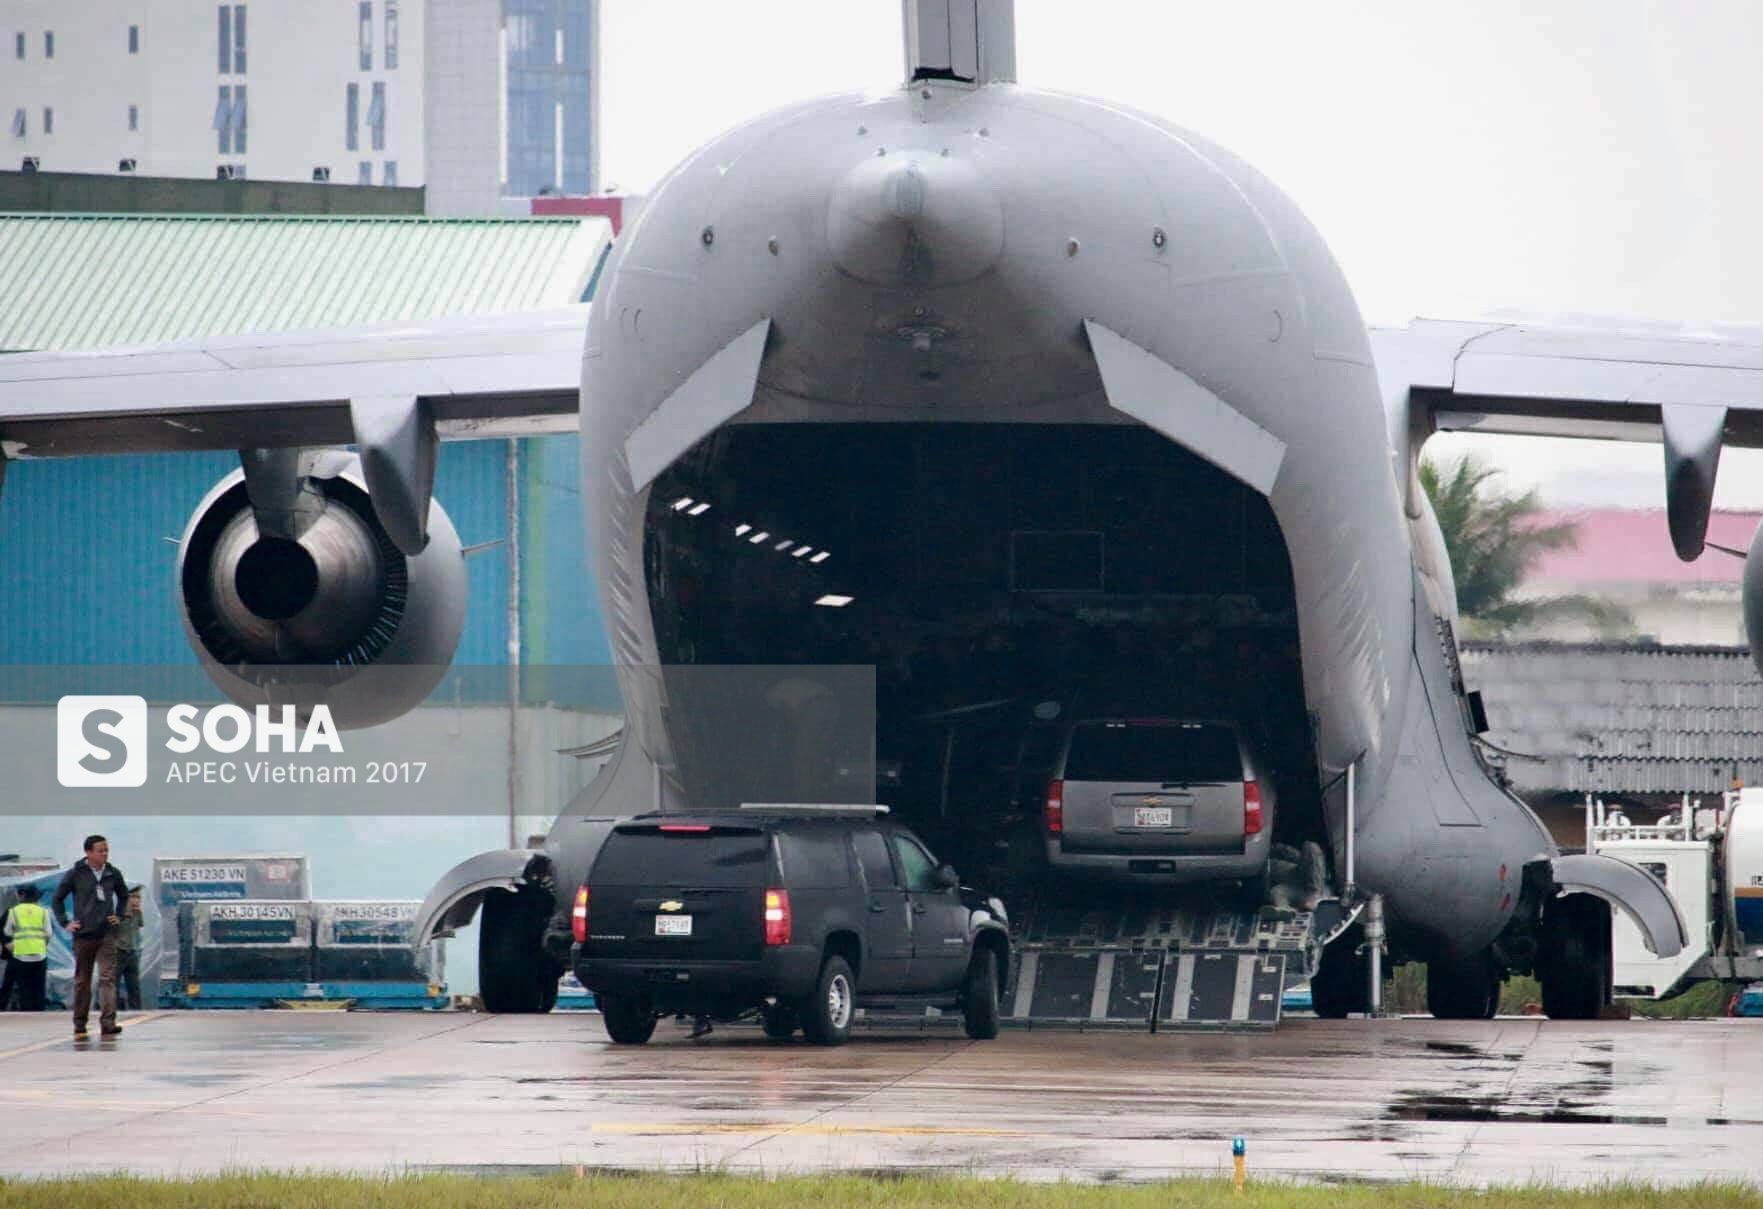 Cadillac One The Beast cùng dàn xe phục vụ Tổng thống Trump tại APEC đổ bộ Đà Nẵng - Ảnh 7.